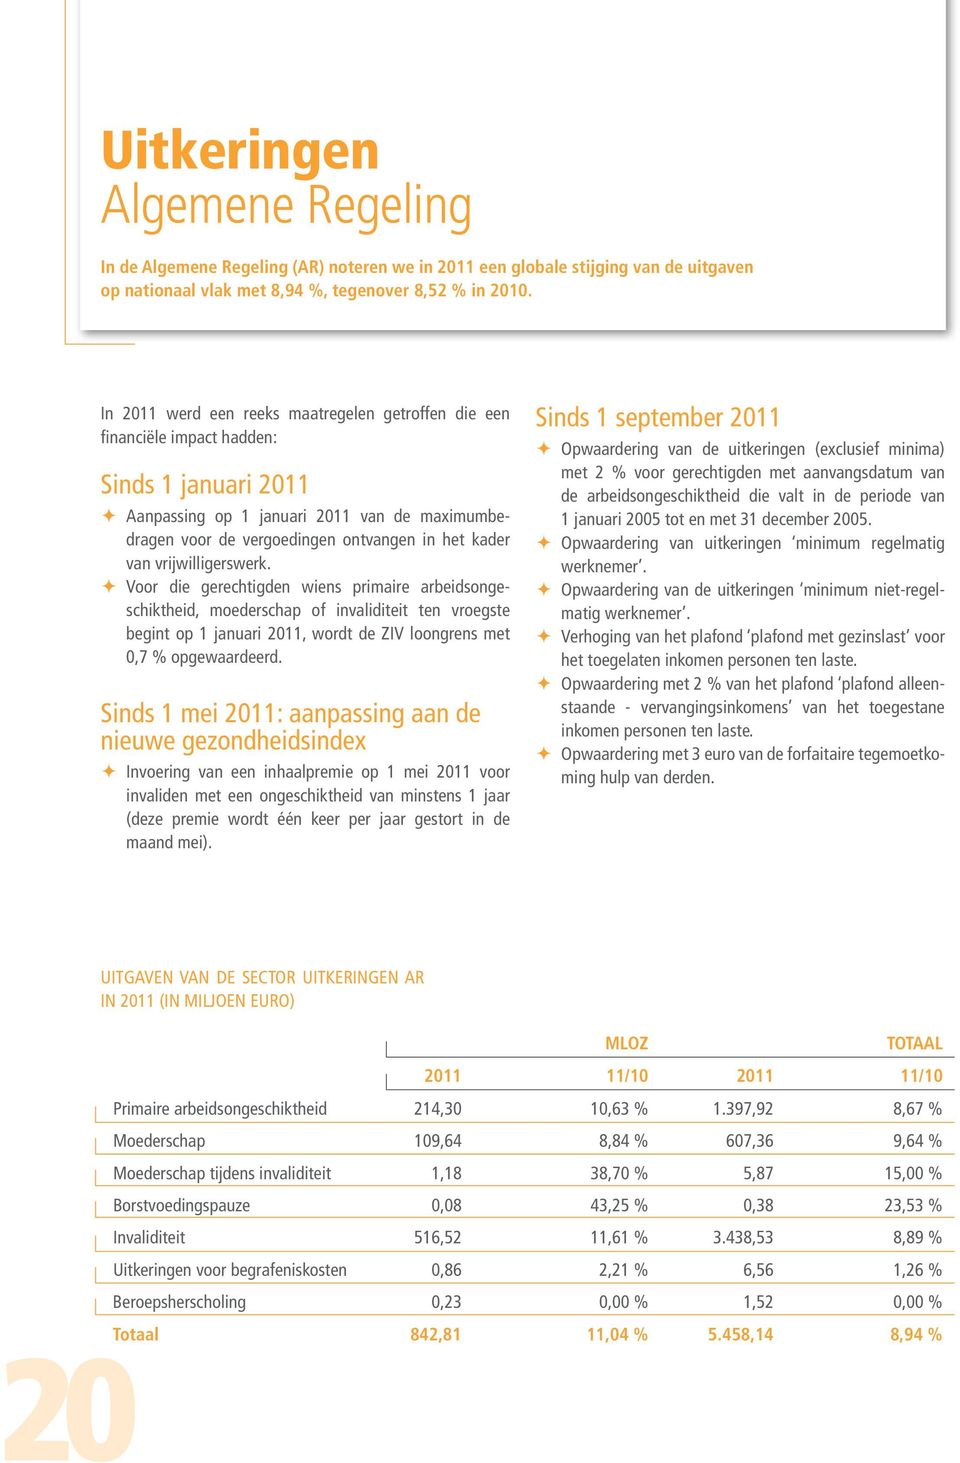 vrijwilligerswerk. Voor die gerechtigden wiens primaire arbeidsongeschiktheid, moederschap of invaliditeit ten vroegste begint op 1 januari 2011, wordt de ZIV loongrens met 0,7 % opgewaardeerd.